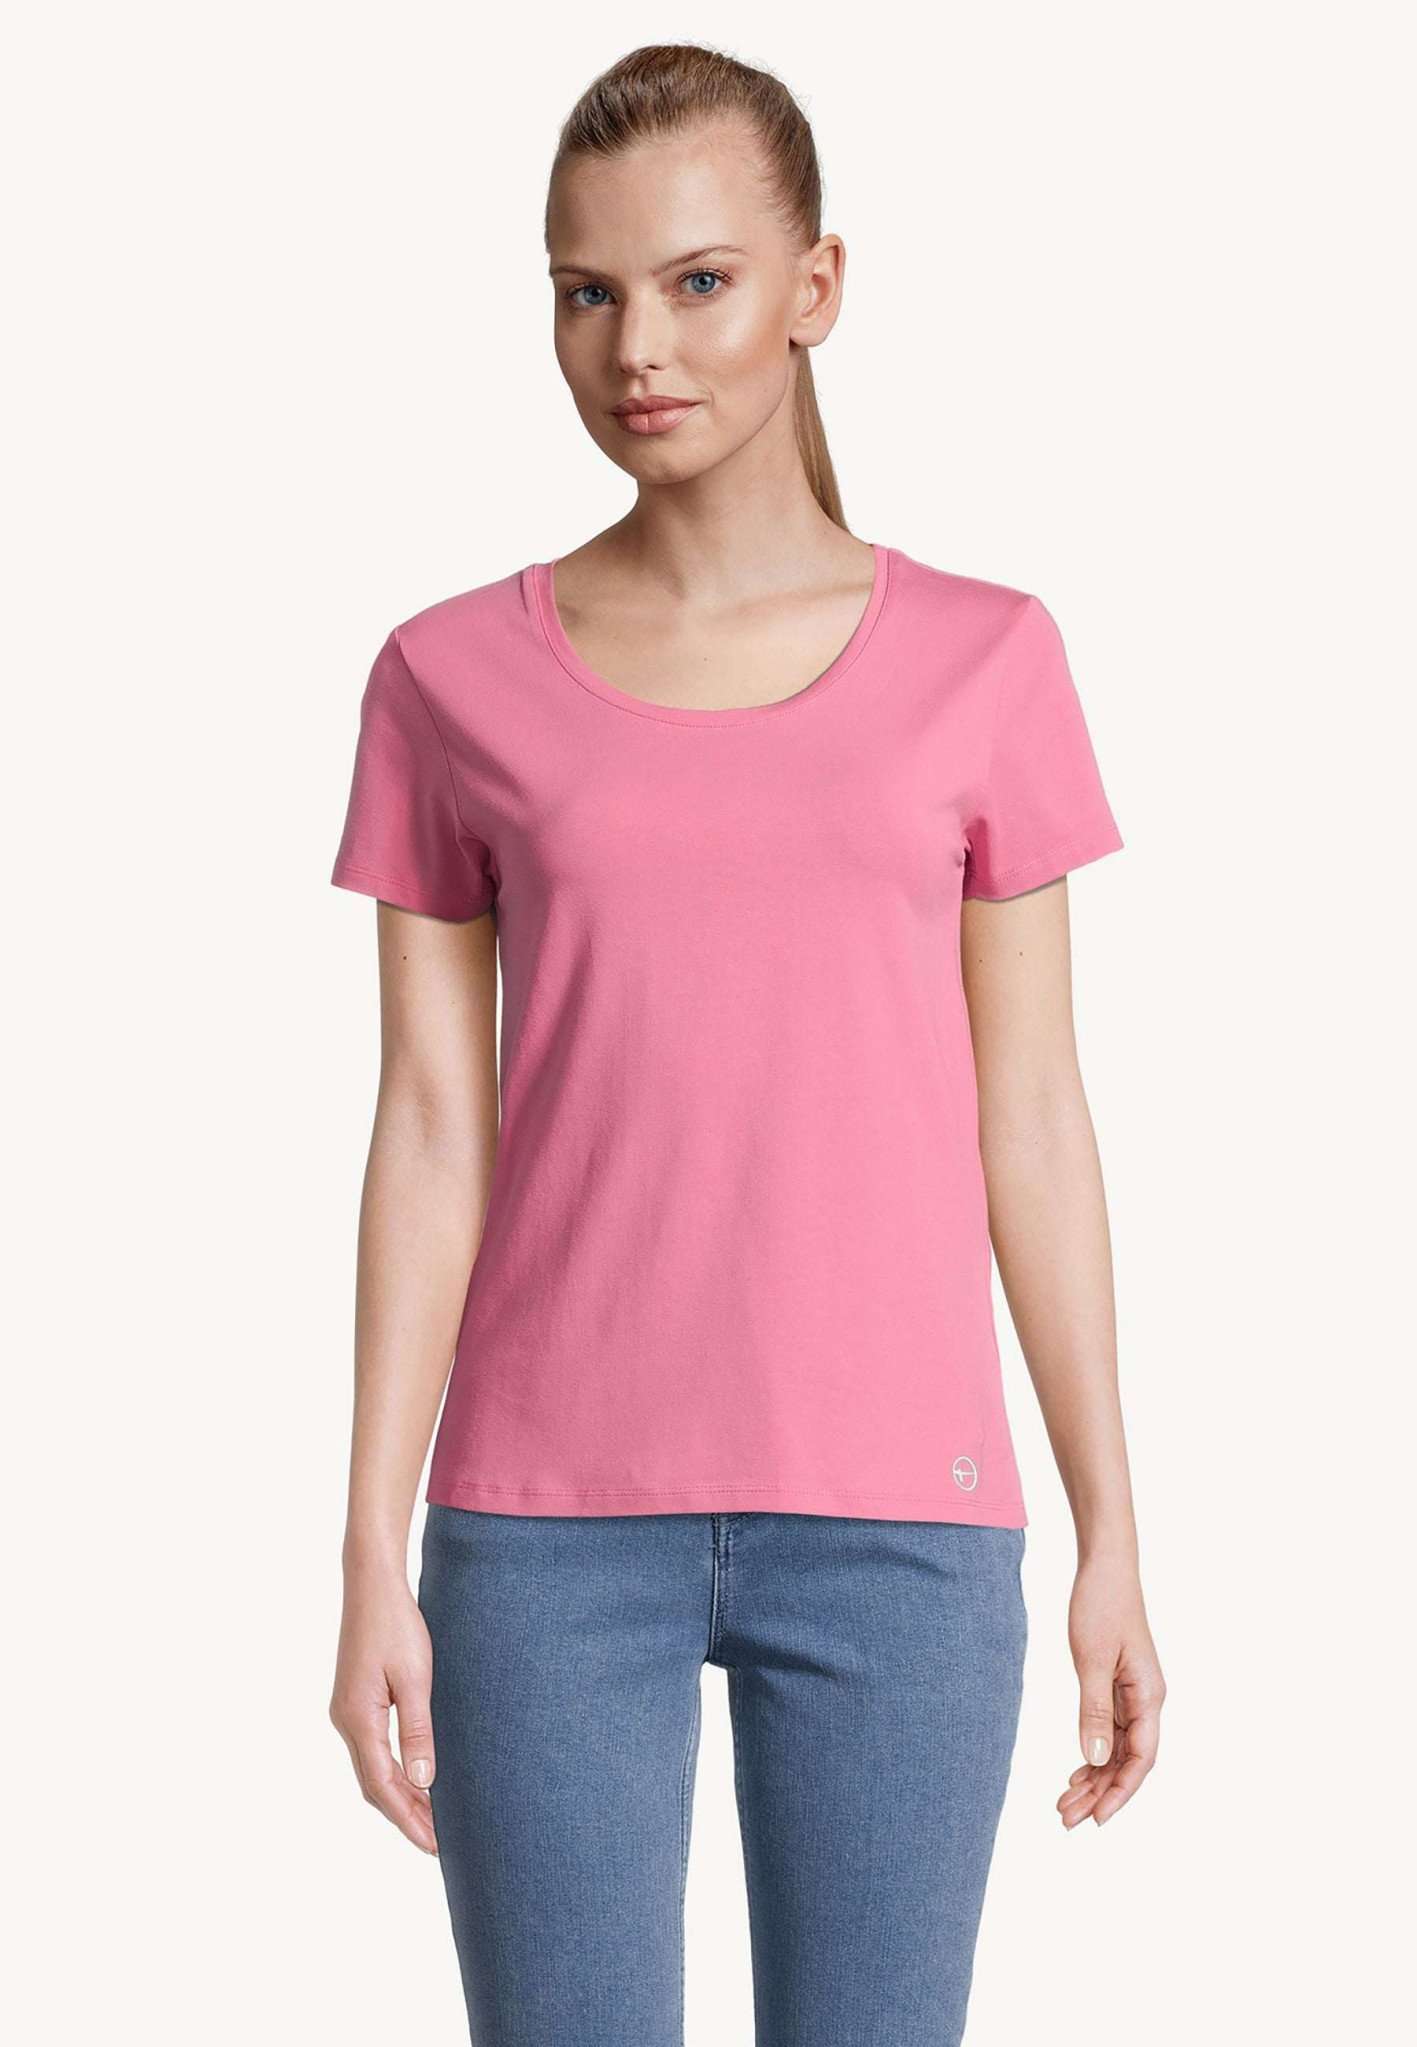 Alba Deep Neck Slim Tee in Pink Carnation T-Shirts Tamaris   